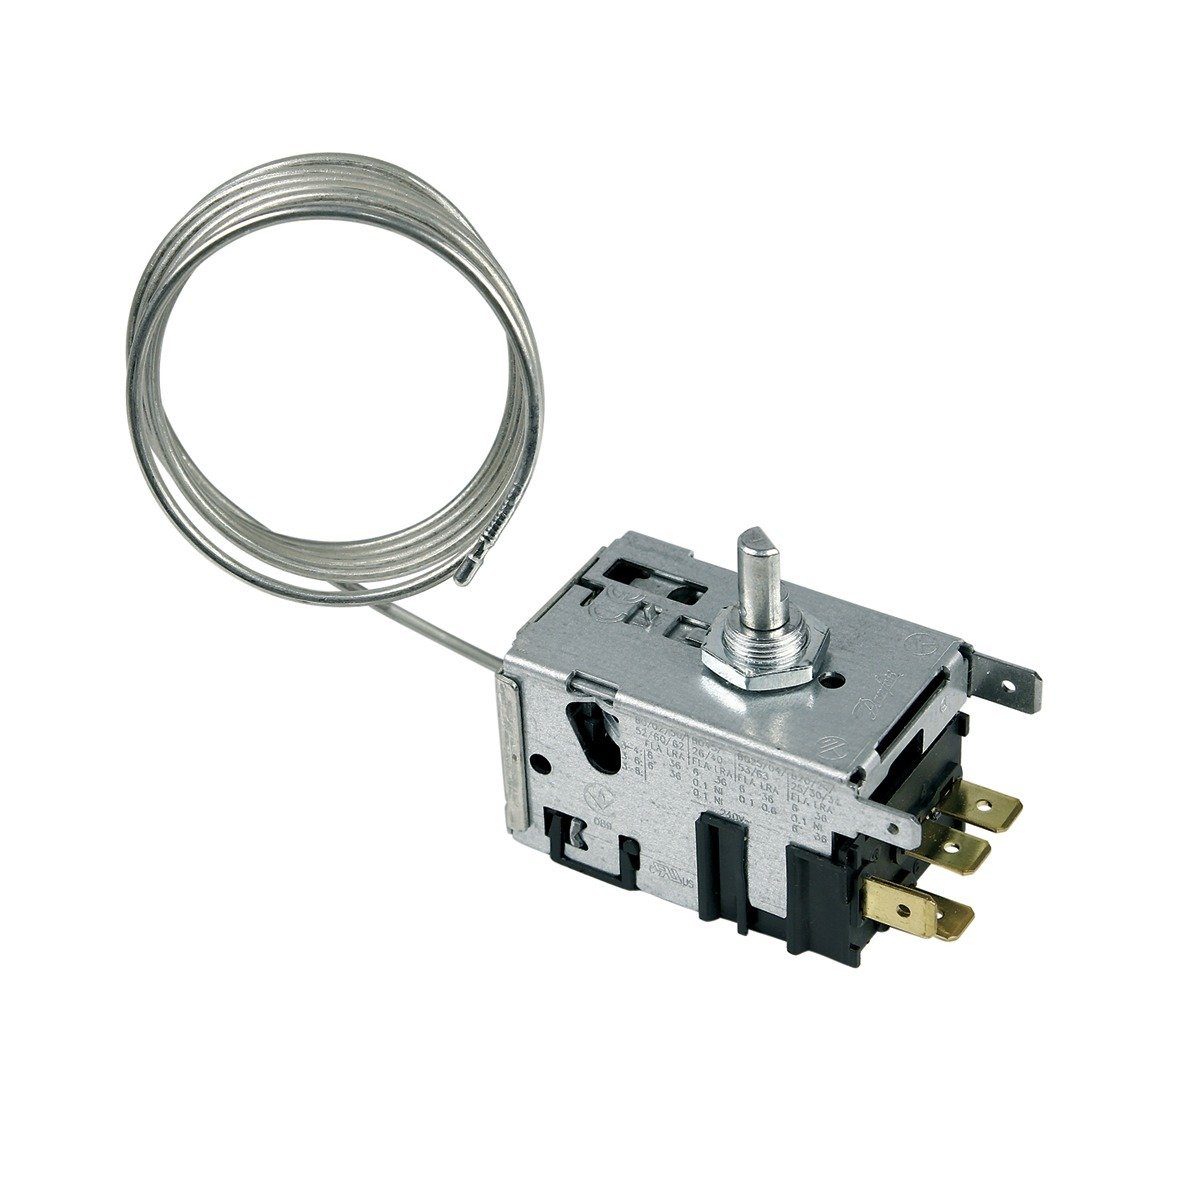 easyPART Thermodetektor wie Danfoss 077B3641 Thermostat Danfoss 077B3641, Kühlschrank / Gefrierschrank